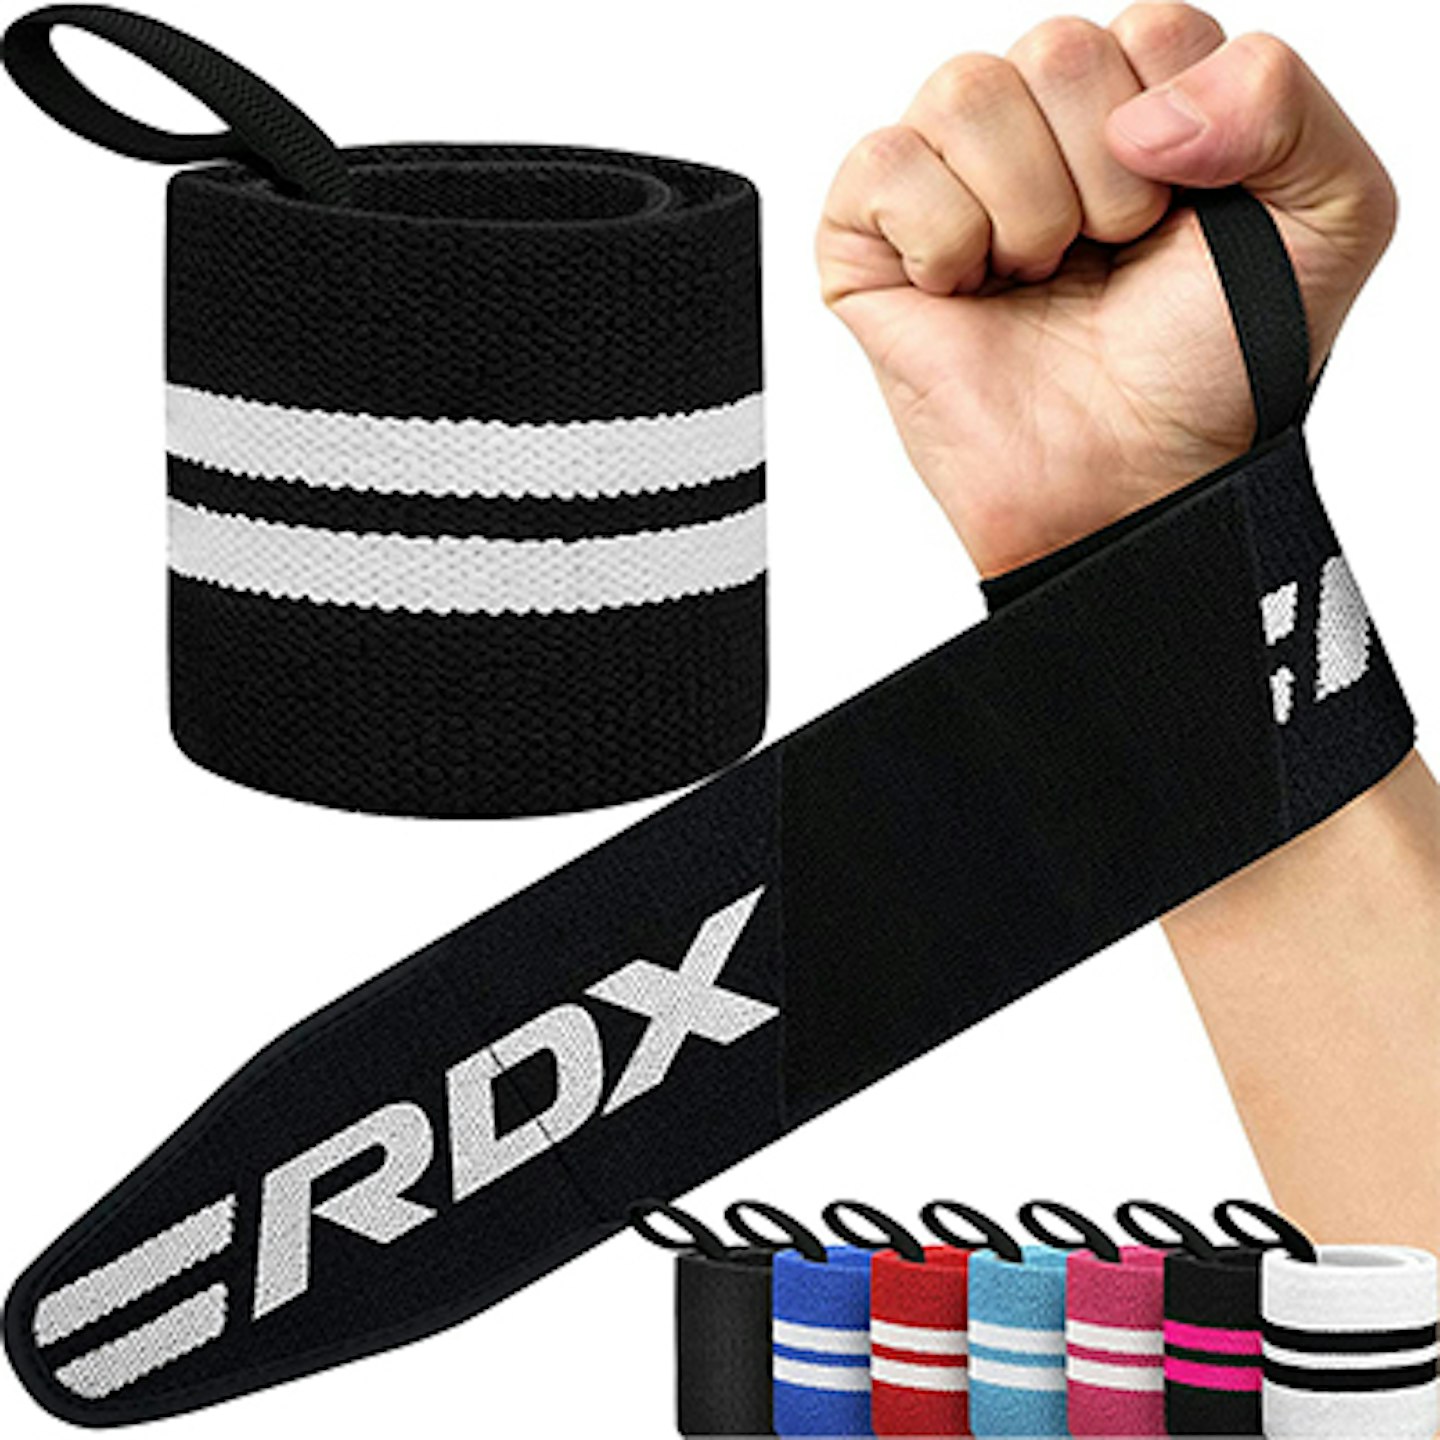 RDX wrist wraps